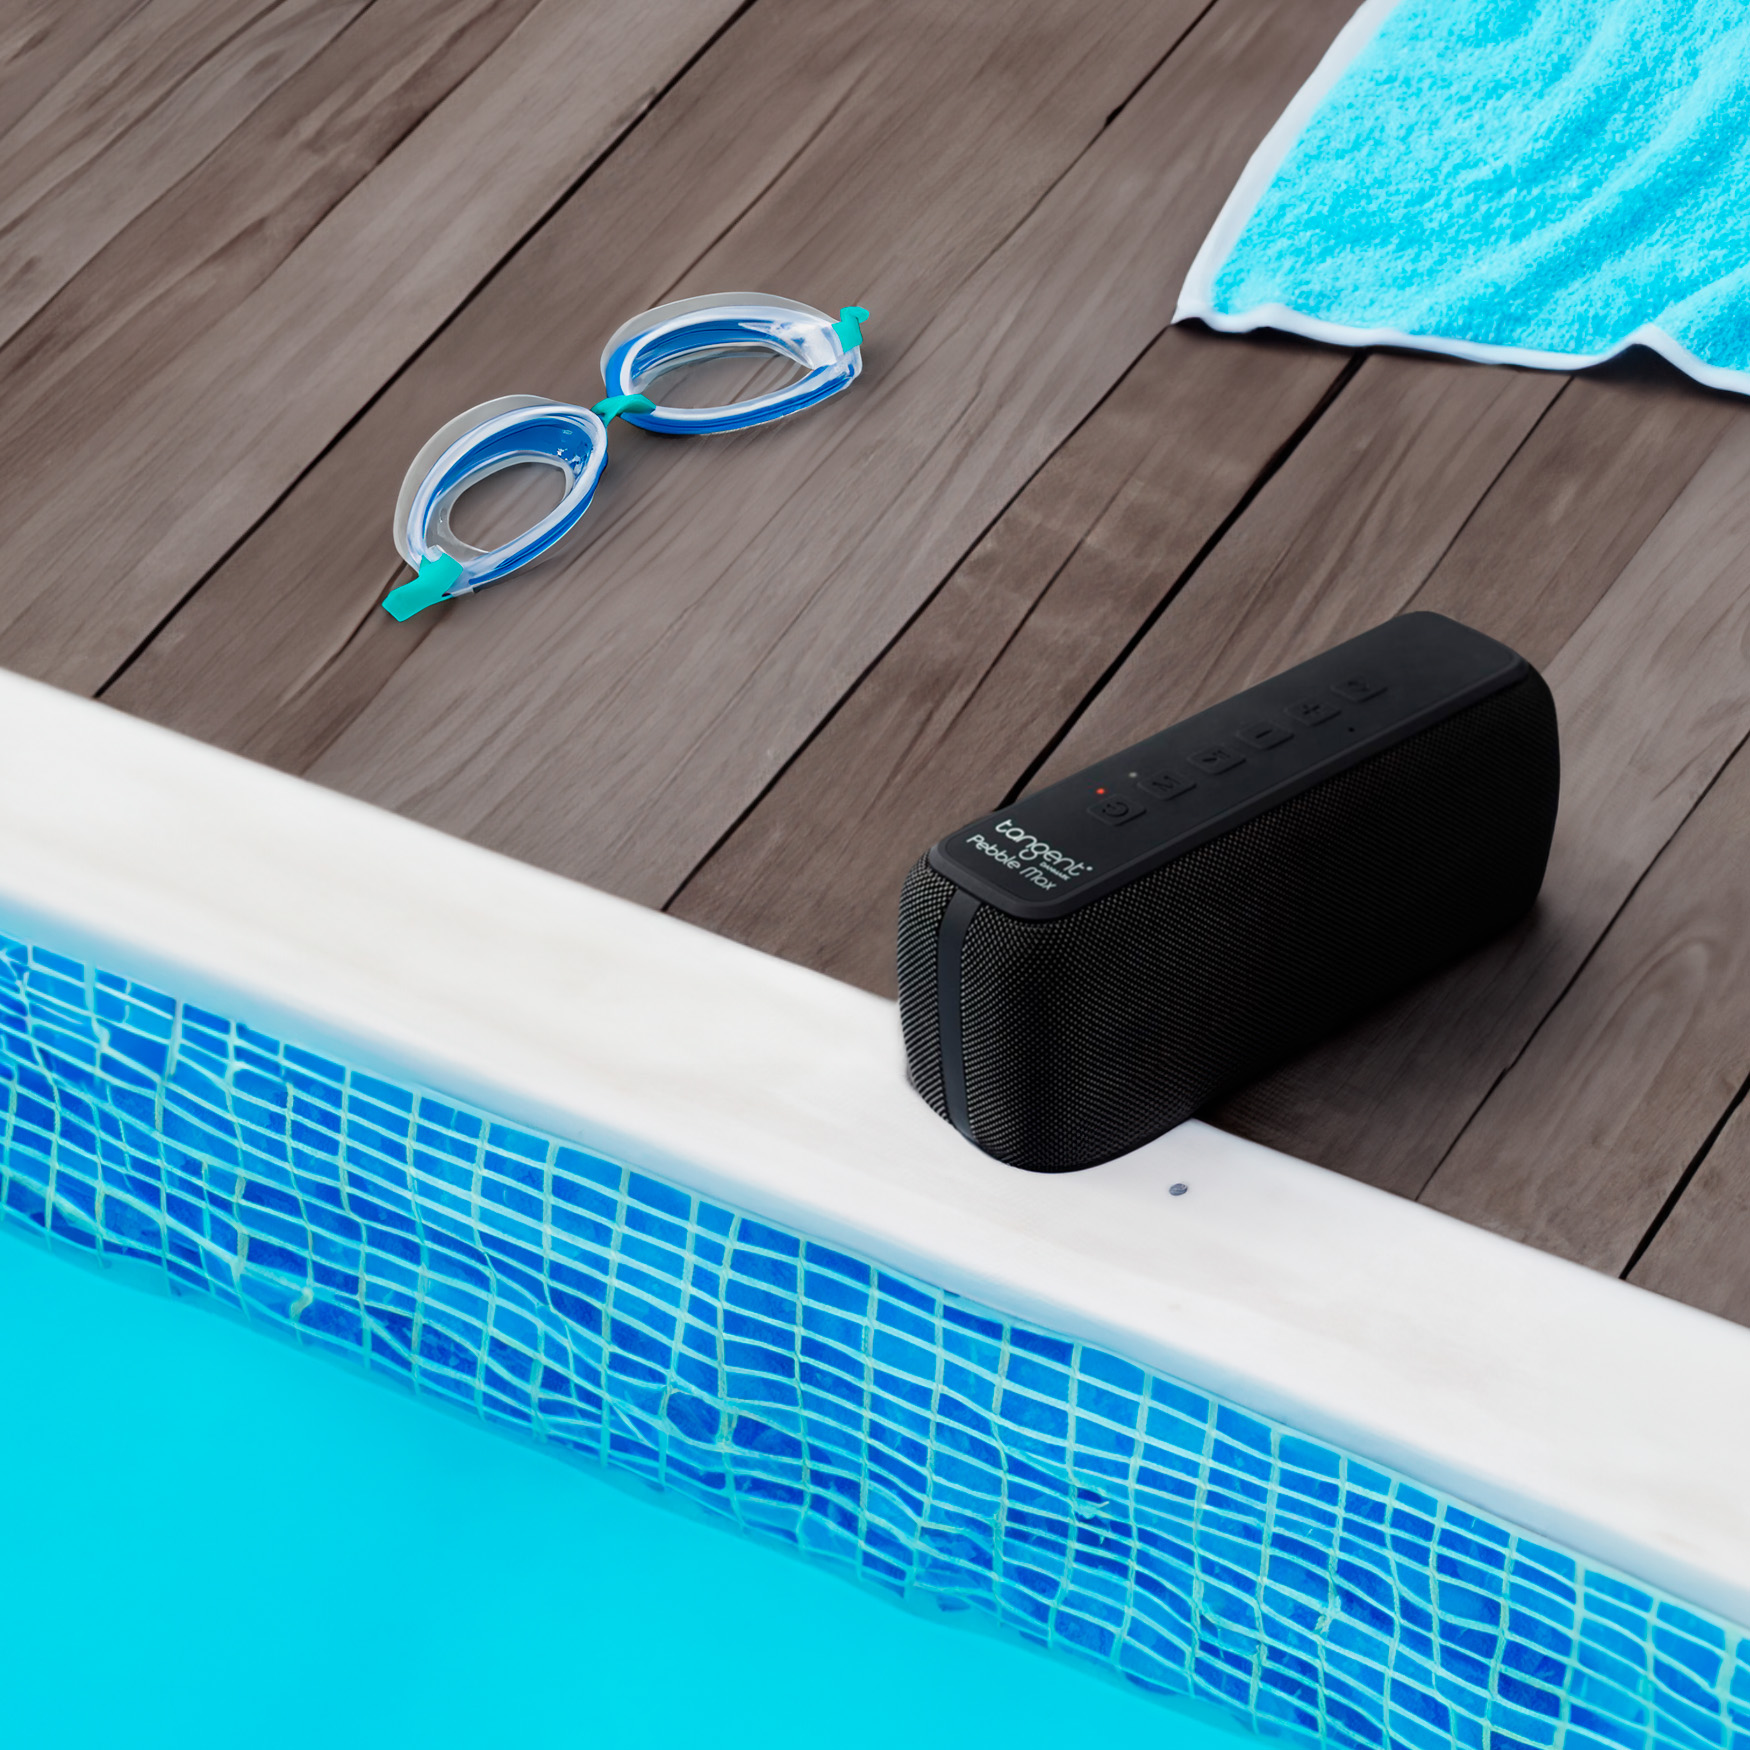 tangent pebble swimming pool radiokulma.fi Tangent Pebble Max Bluetooth kaiutin IPX 5 roiskevesisuojattu Pebble Max - Bluetooth-kaiutin tarjoaa korkealaatuista ääntä ja kestävyyttä. Tämä kompakti kaiutin tarjoaa uskomattoman bassokkaan äänenlaadun, joka syventää musiikkielämystäsi! Olipa kyseessä bile tai rentoutumishetki, Pebble Max pitää huolen siitä, että musiikki soi täydellä voimalla. Lisäksi kaiutin on suunniteltu kestämään roiskevettä, joten voit nauttia suosikkimusiikistasi missä tahansa. Koe ääni- ja seikkailuelämys Pebble Maxin avulla! Lisäksi langattoman TWS stereoliitännän avulla voit tehdä kahdesta Pebble Max kaiuttimesta kaiutinparin ja nauttia korkealaatuisesta stereo äänentoistosta.  